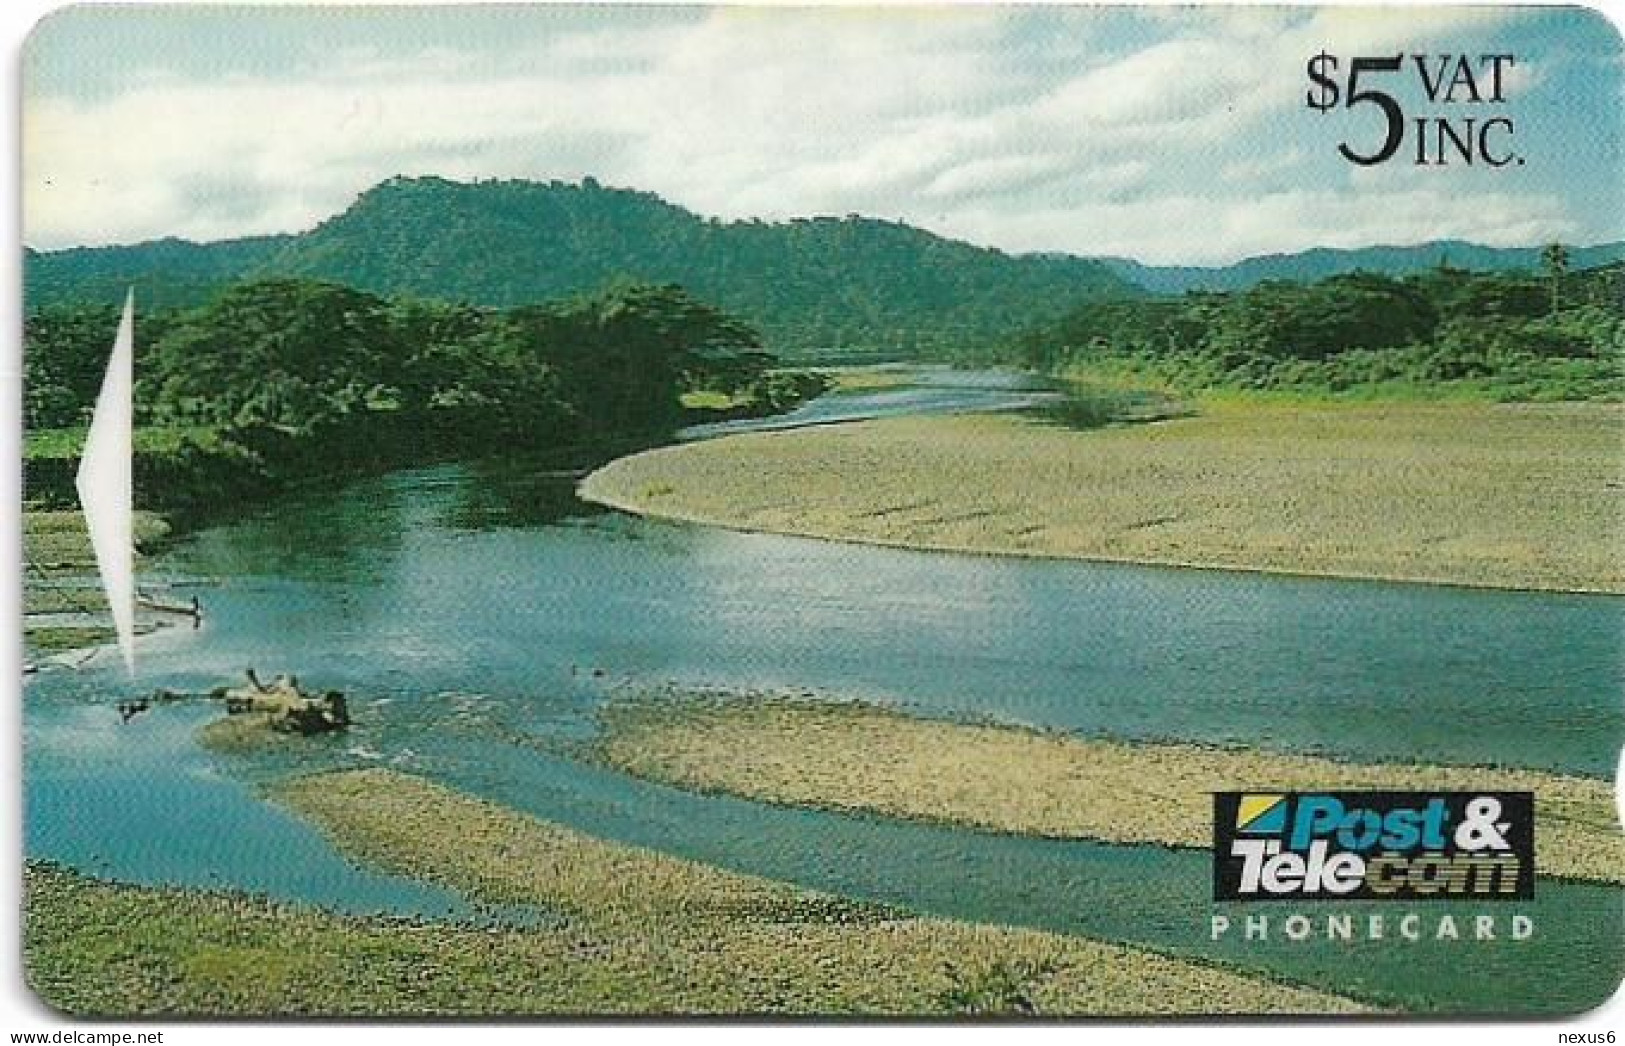 Fiji - Tel. Fiji - 6th Issue - Inland River - 04FJC - 1993, 5$, 40.000ex, Used - Fidji